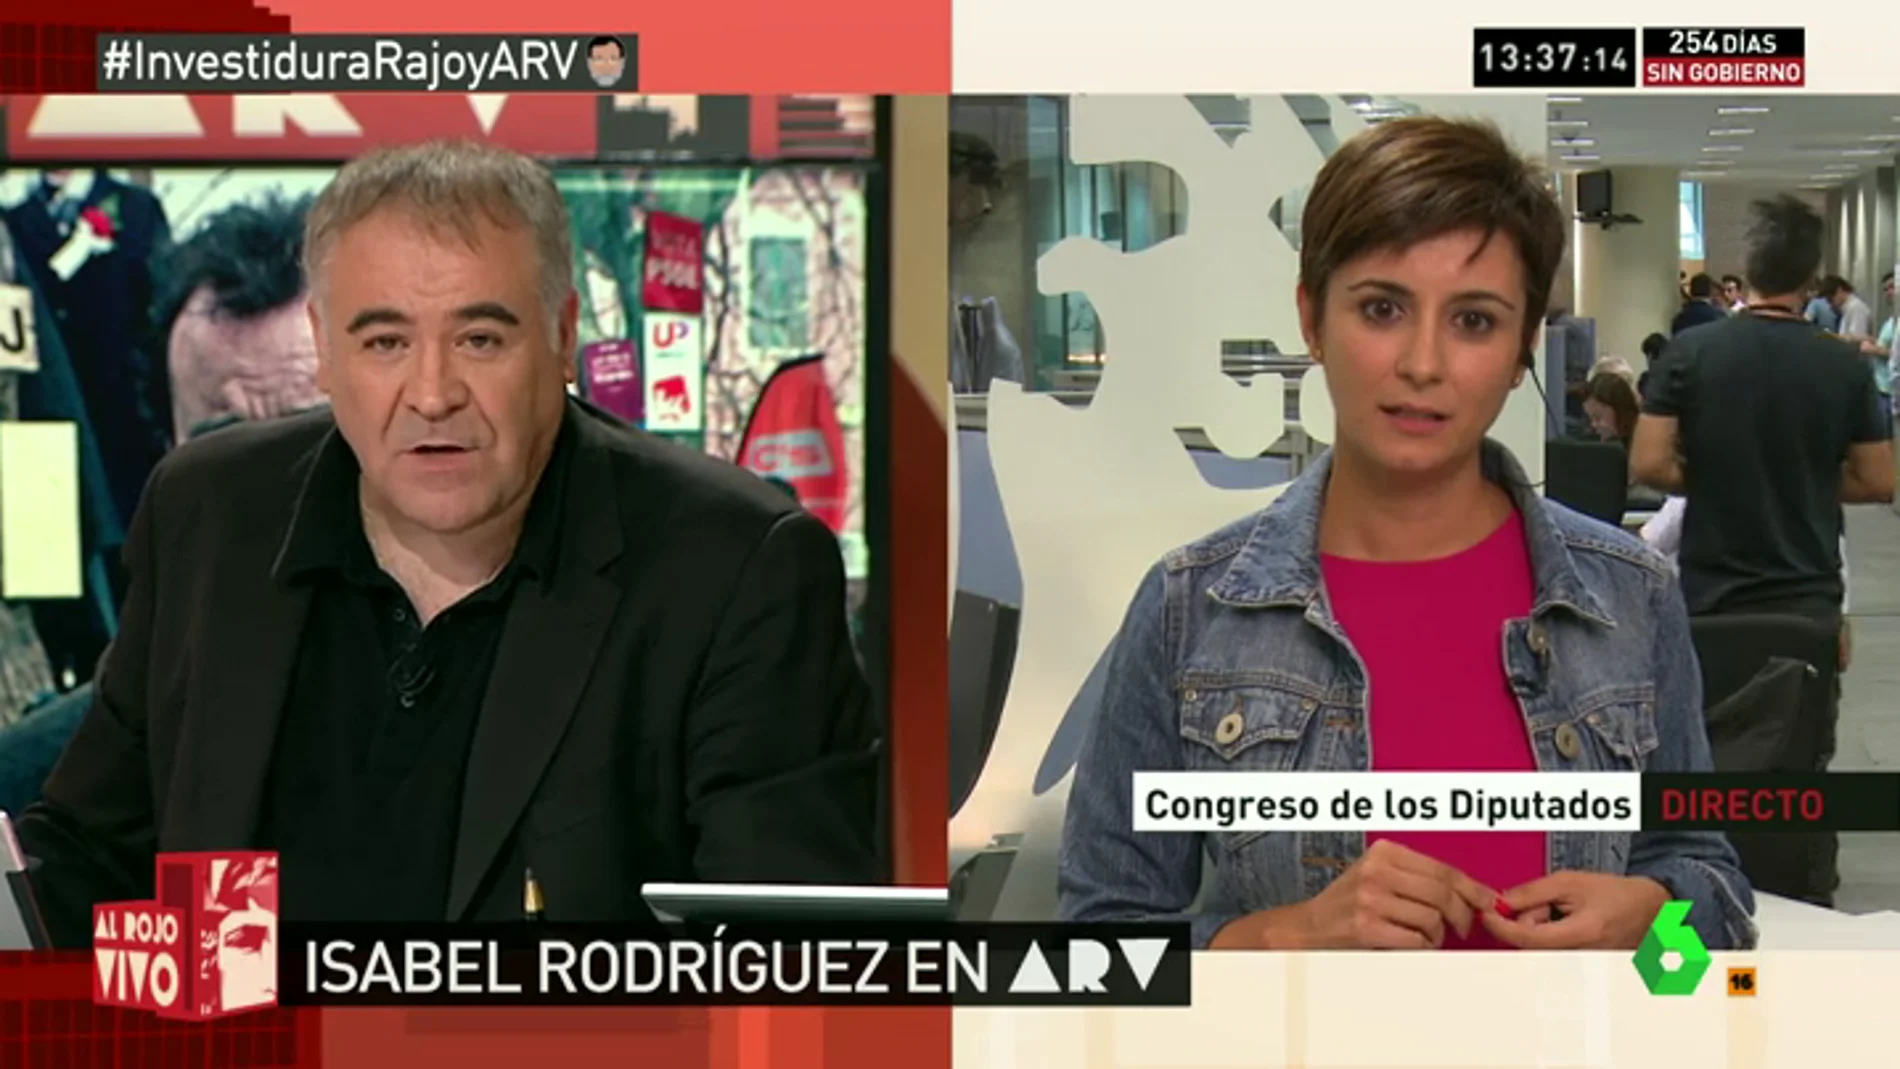 Frame 76.415271 de: Isabel Rodríguez: "Le diremos que 'no' a Rajoy, nadie le cree, ha mentido mucho"